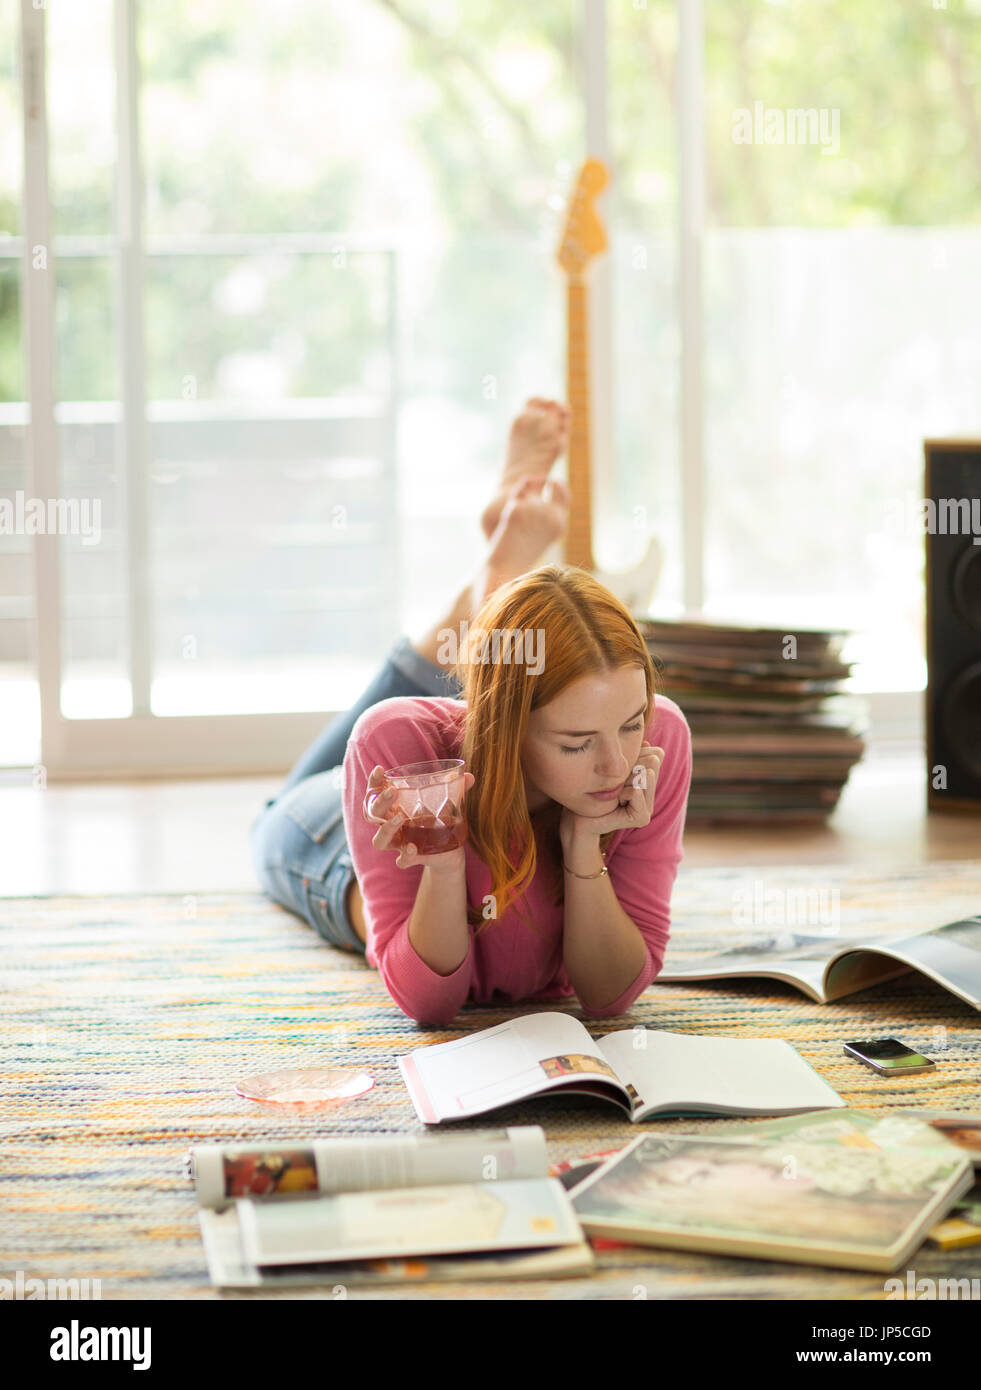 Eine Frau liegt auf dem Boden halten einen Drink und eine Zeitschrift liest. Stockfoto